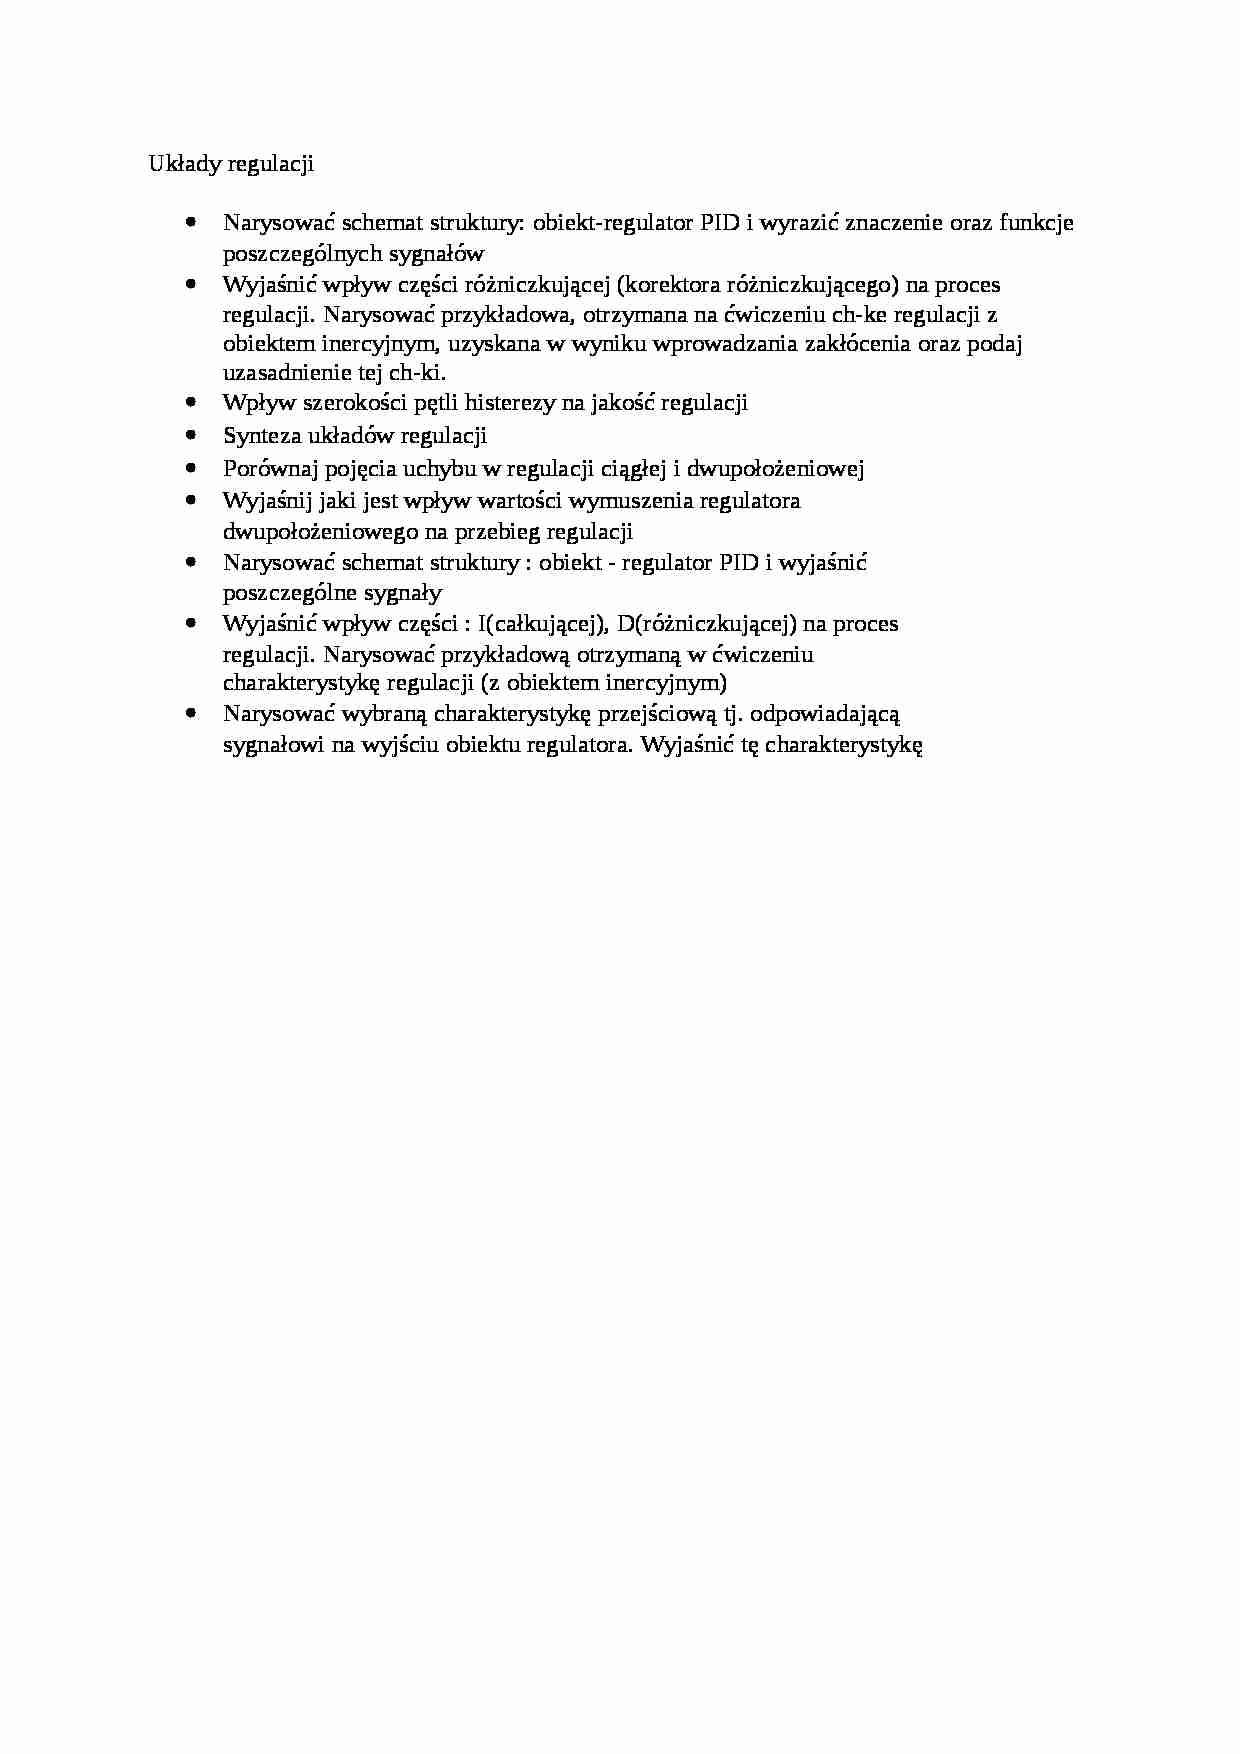 Układy regulacji - pytania do egzaminu - strona 1